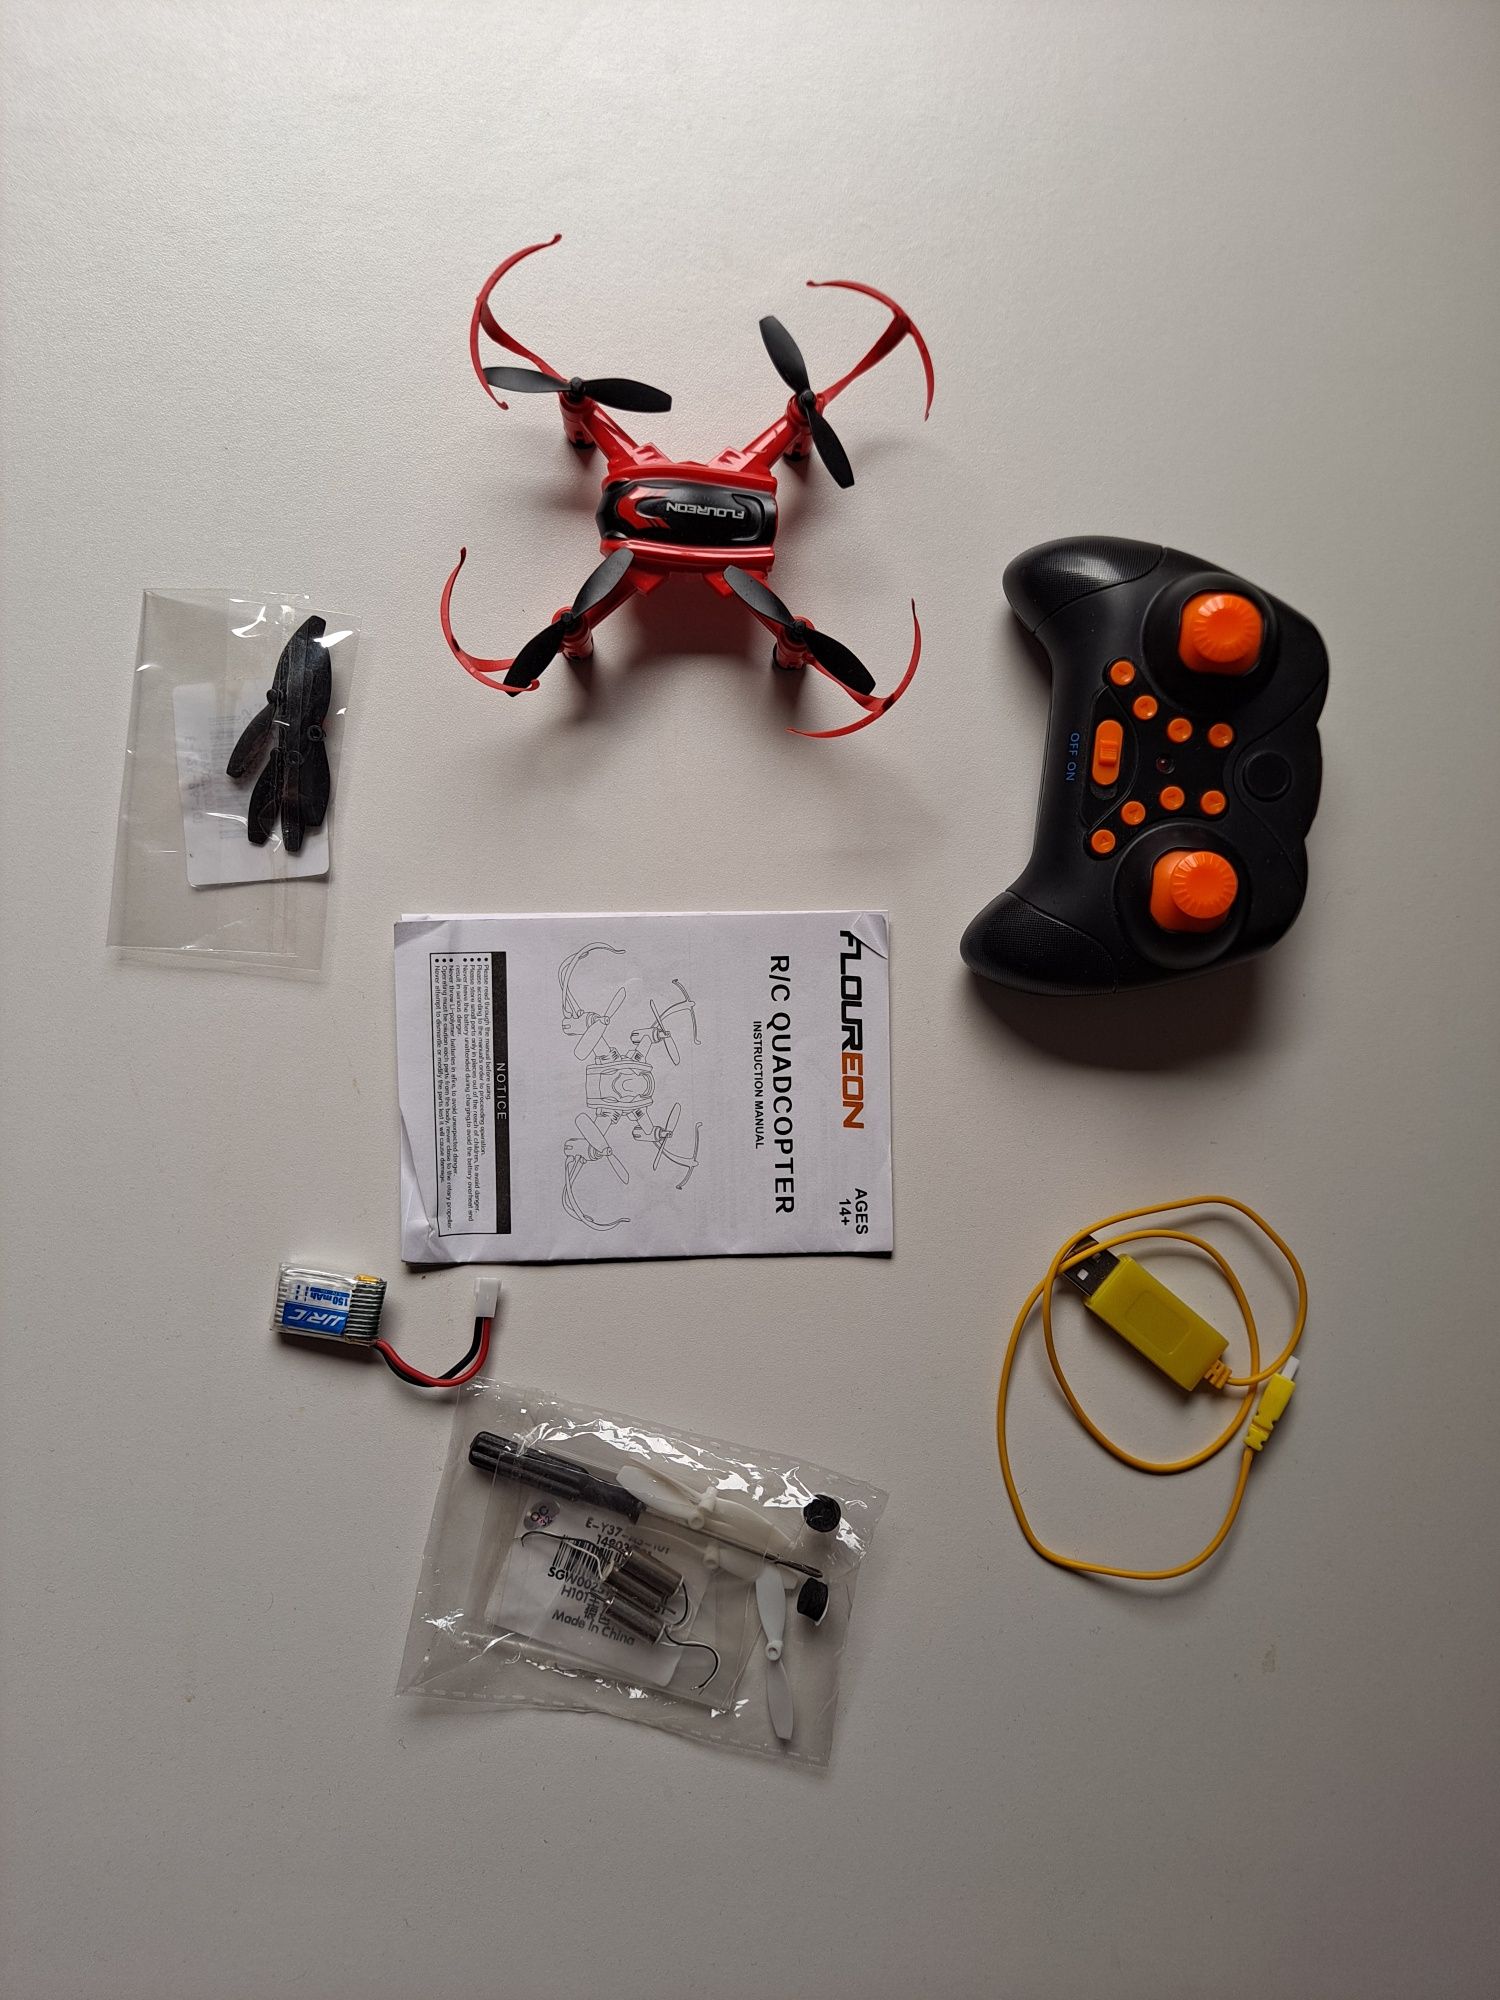 Mini drone como novo